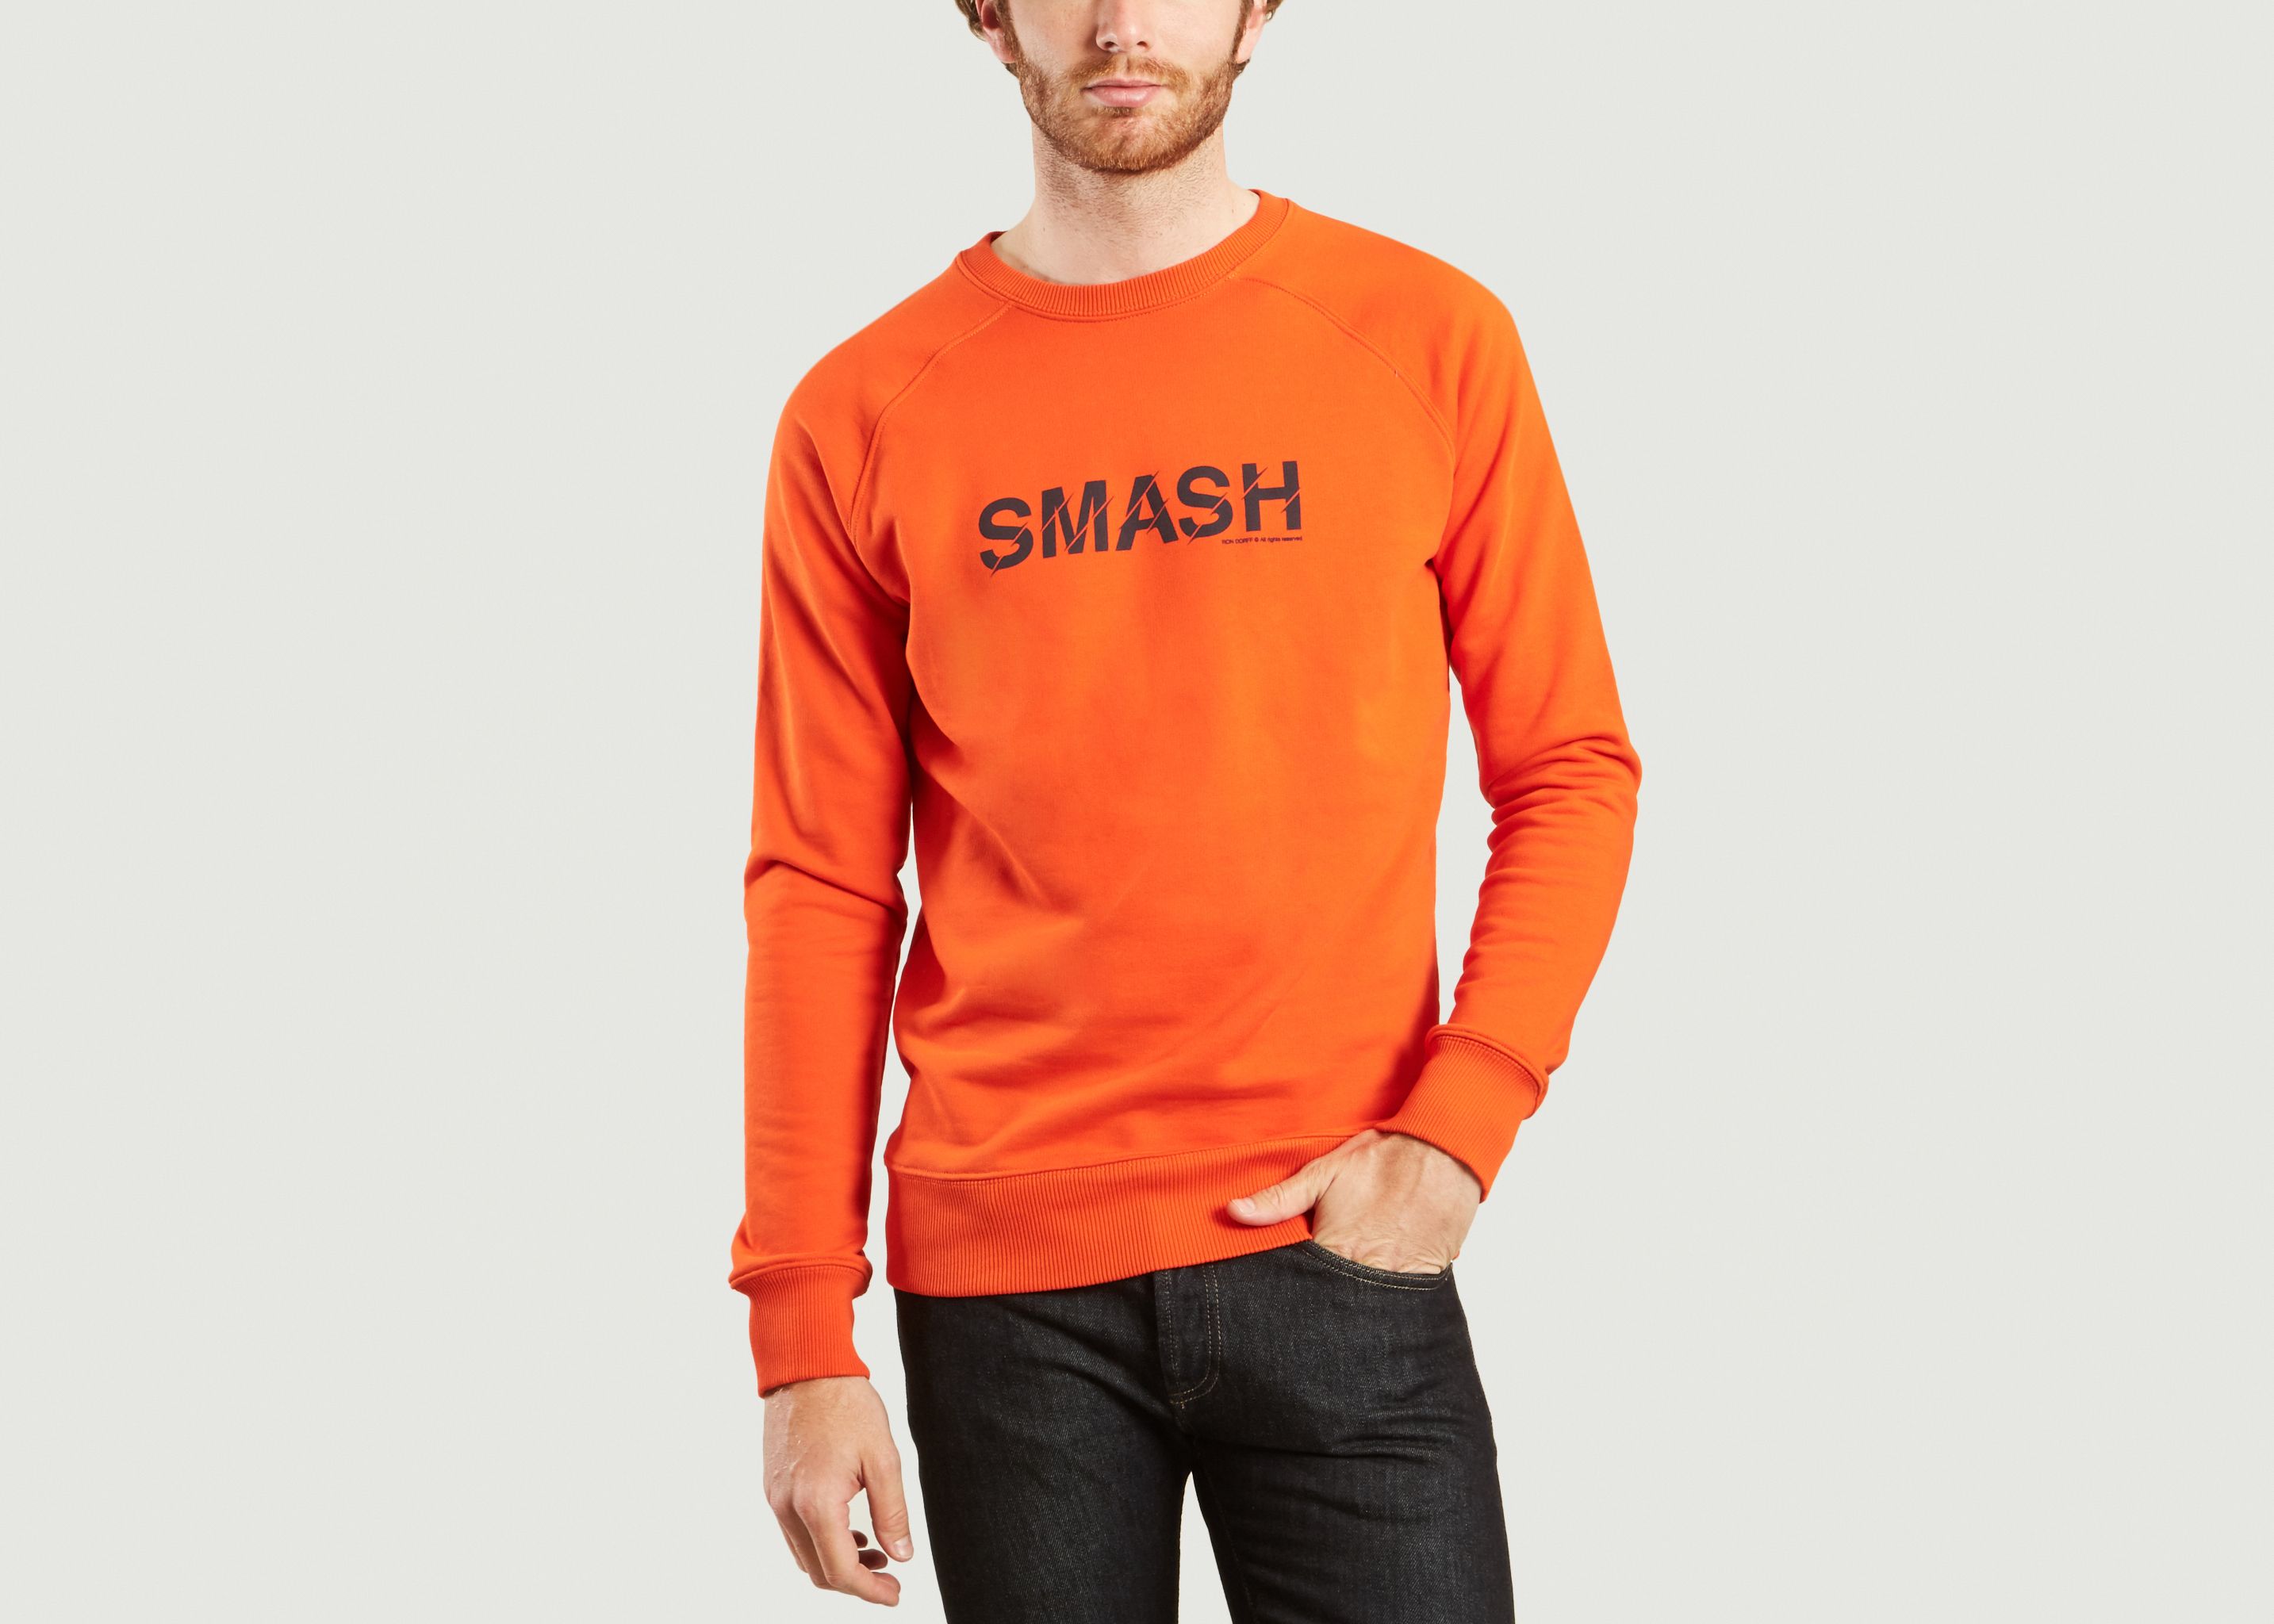 Smash Sweatshirt - Ron Dorff